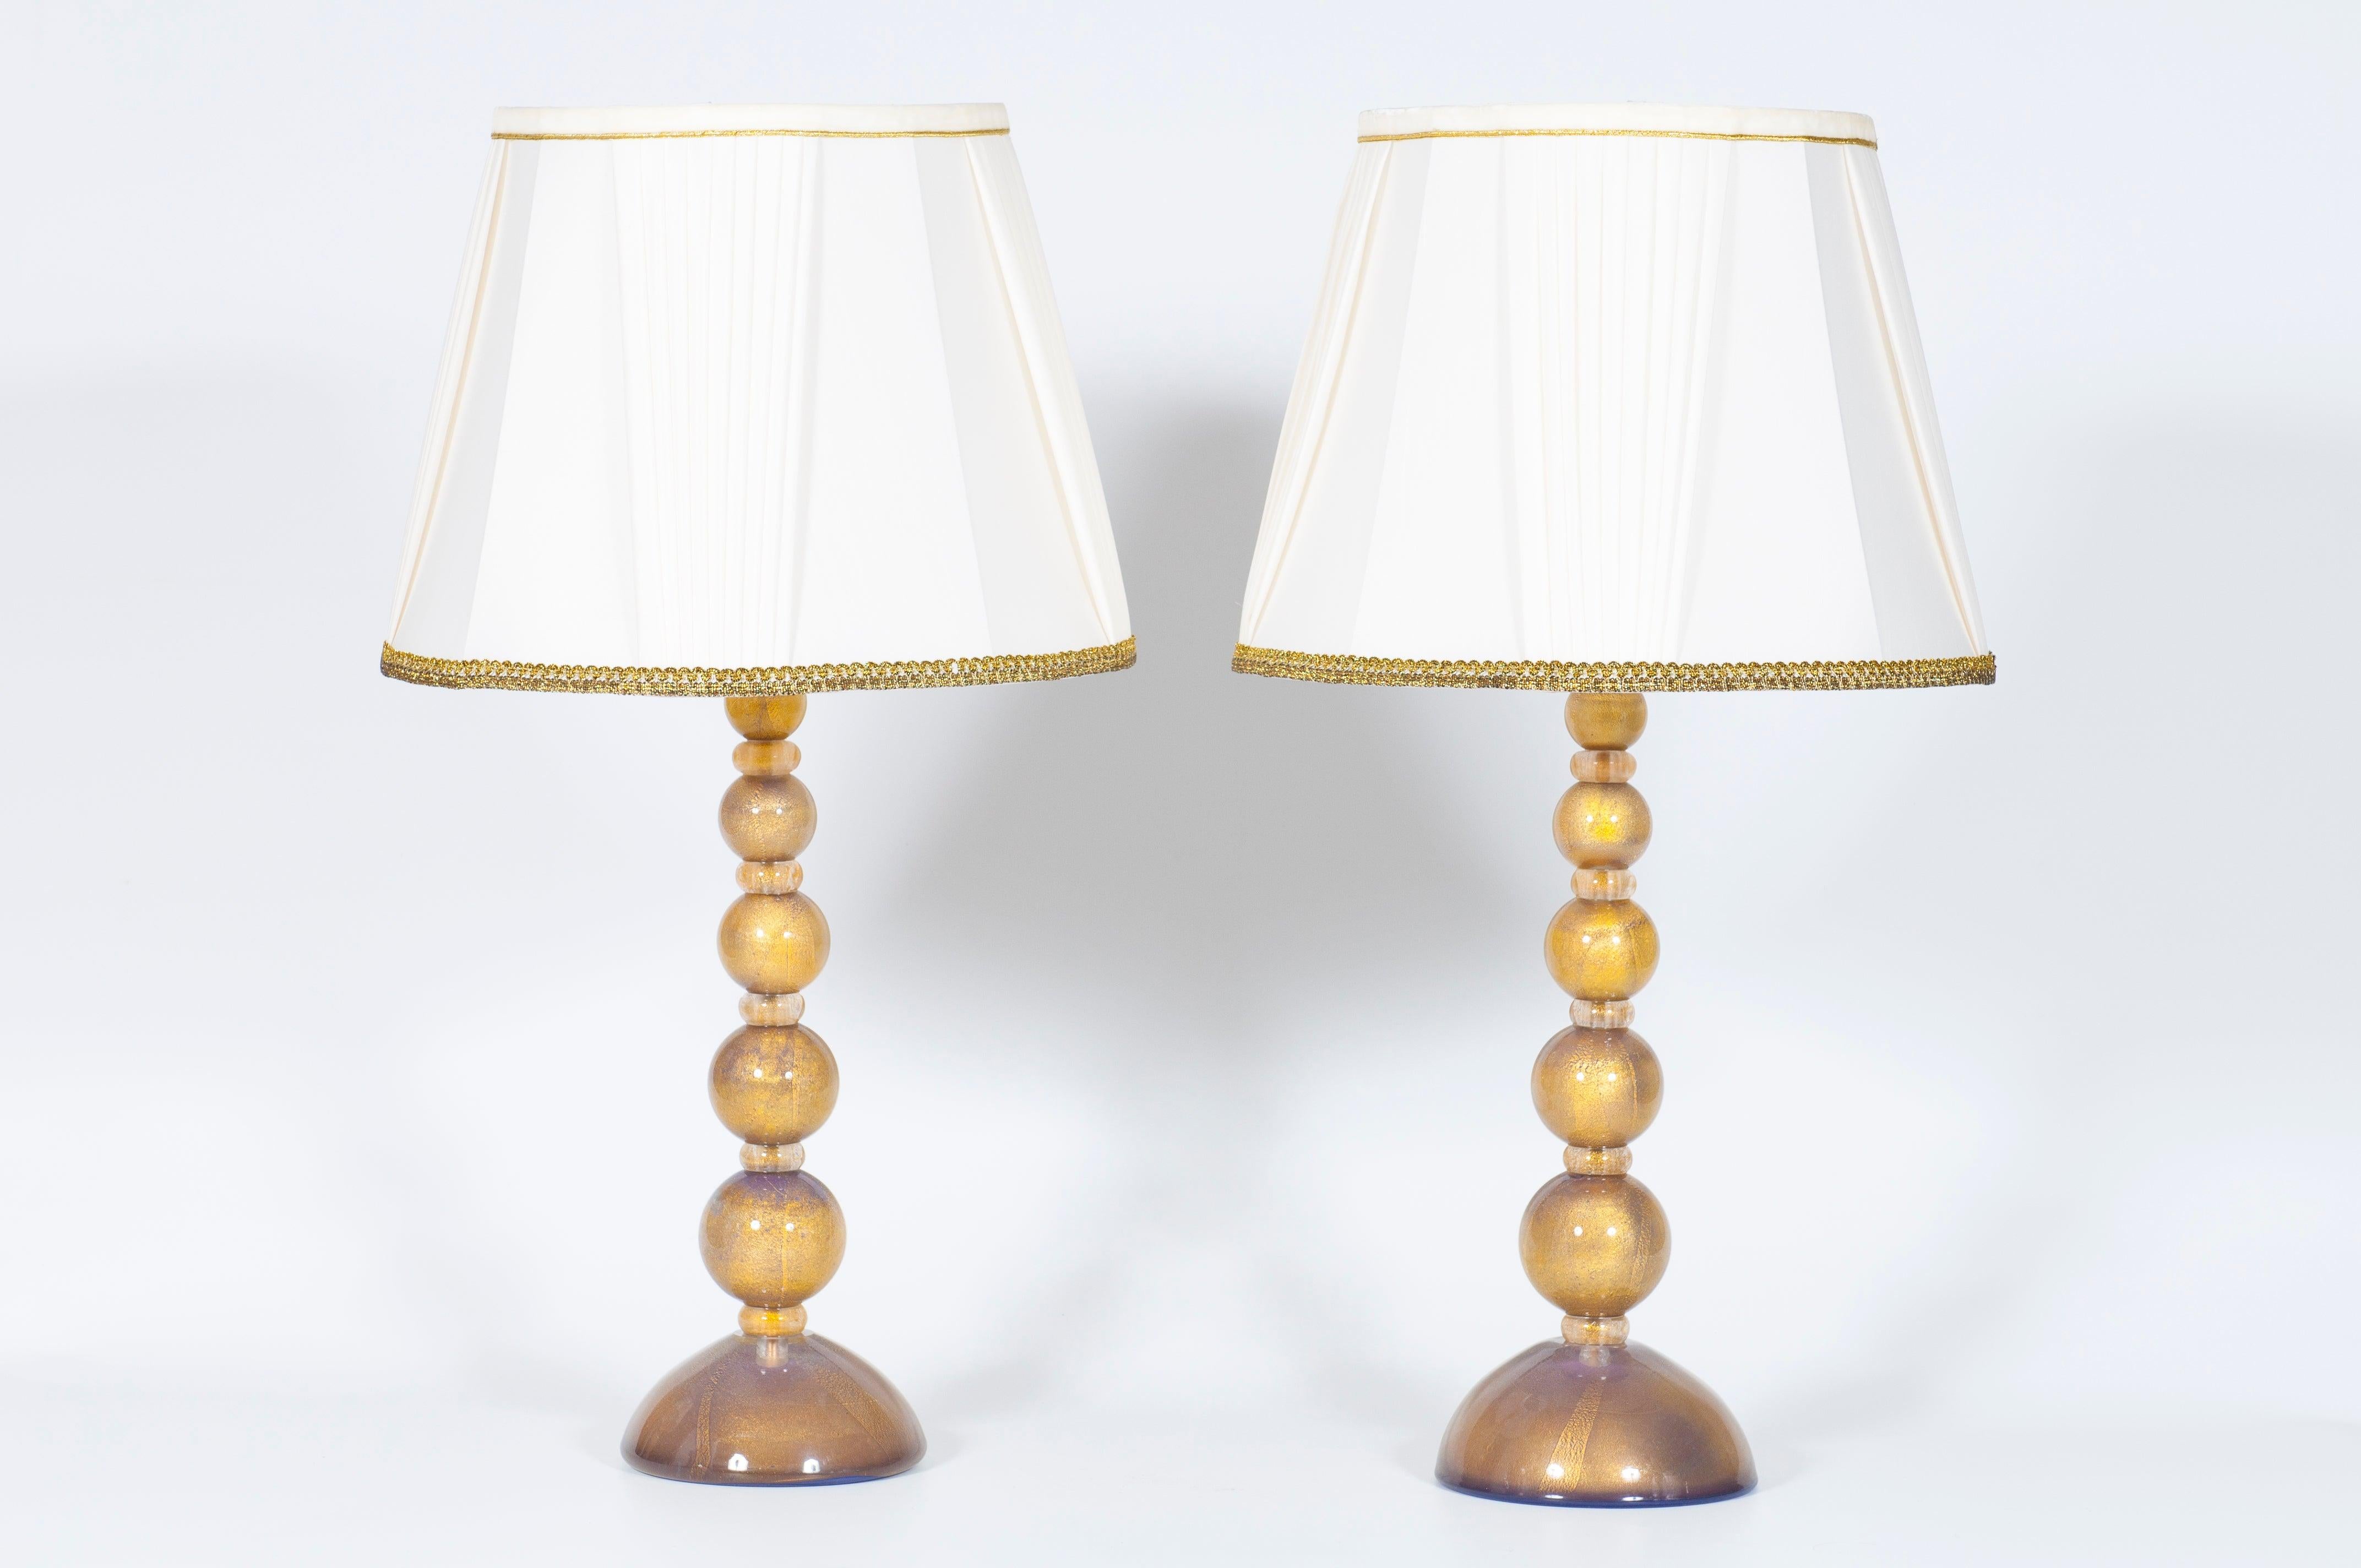 Paire de lampes de table exquises en verre de Murano avec des accents violets et dorés, design italien des années 2000.
Cette exceptionnelle paire de lampes de table, entièrement fabriquée à la main en verre soufflé de Murano, incarne l'art et